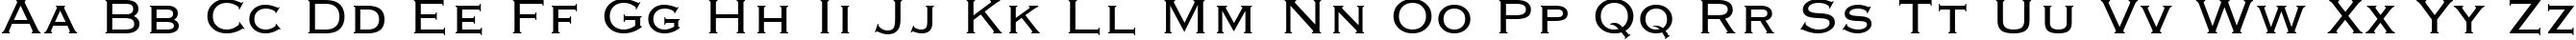 Пример написания английского алфавита шрифтом font122